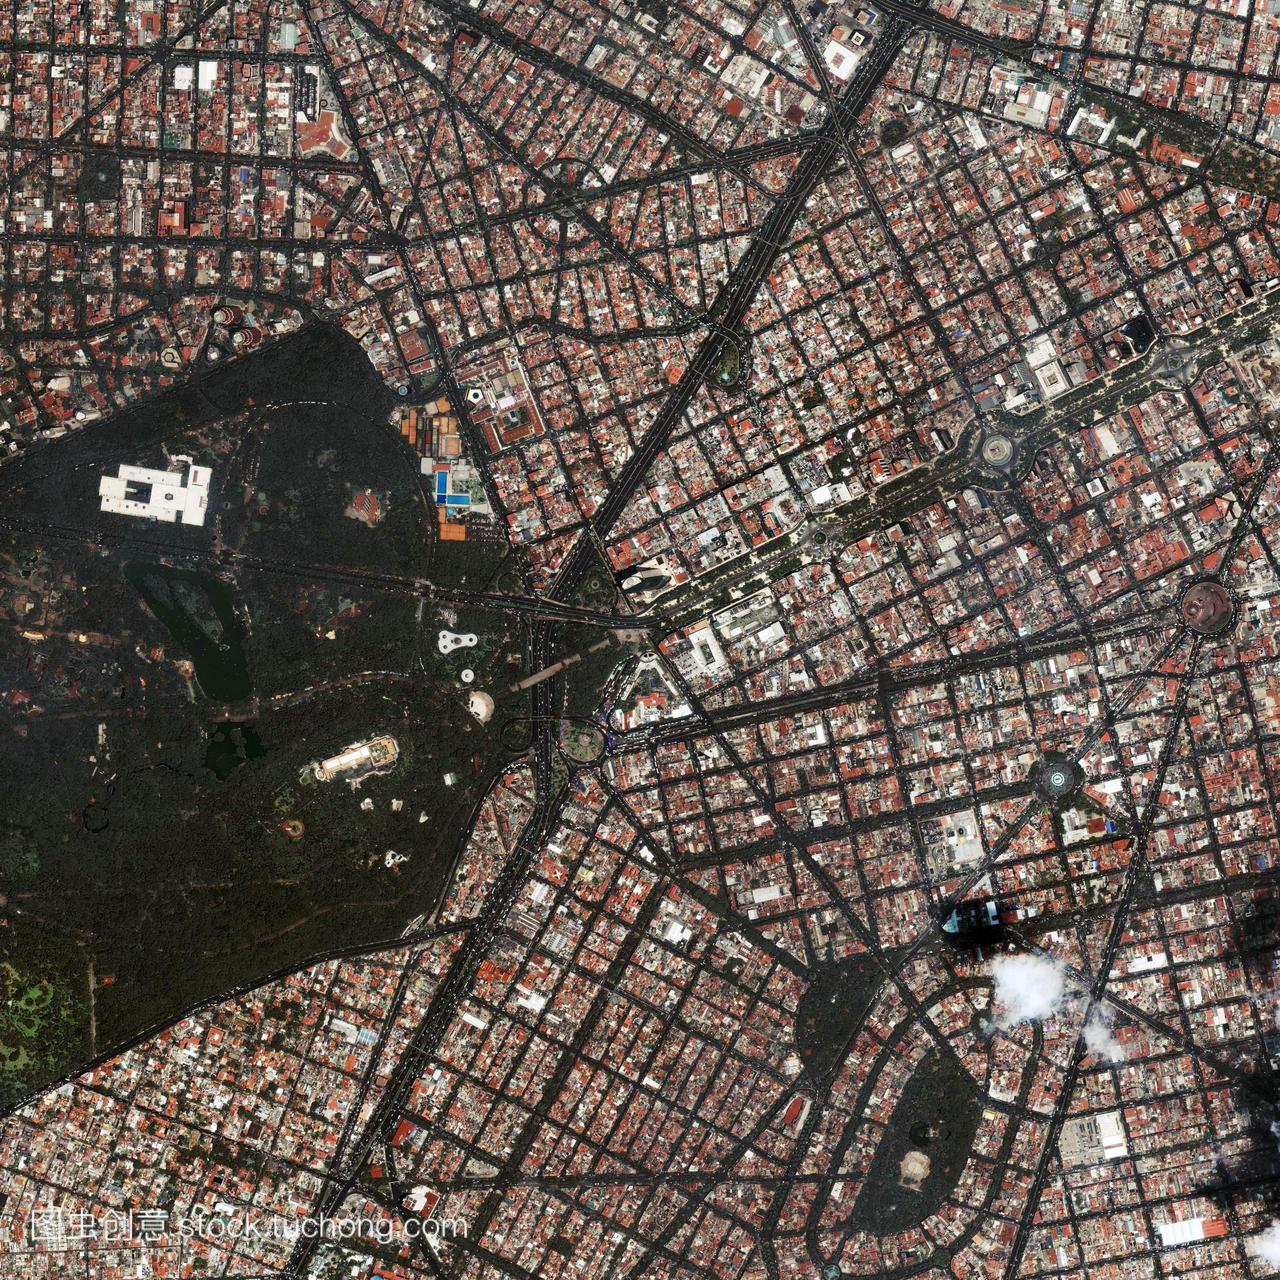 墨西哥城墨西哥卫星图像。墨西哥城位于墨西哥